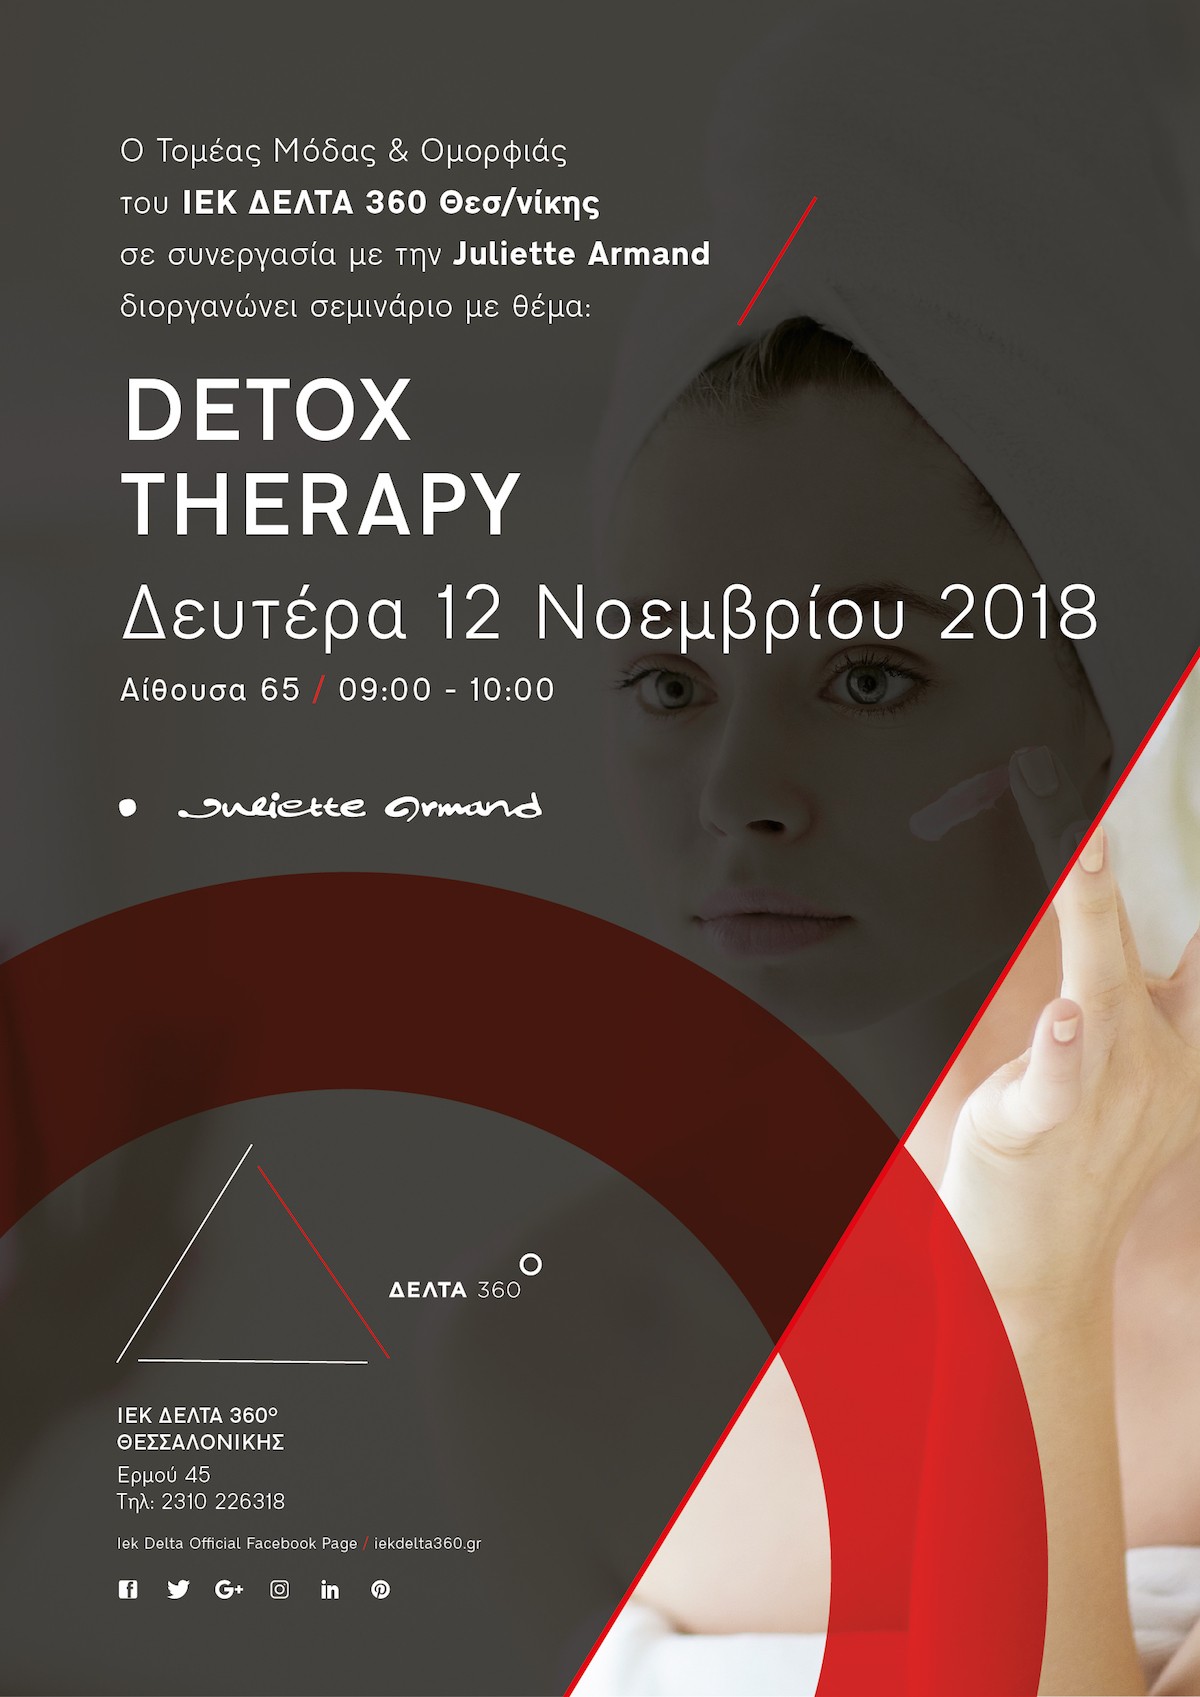 skg-detox-therapy-01.jpg